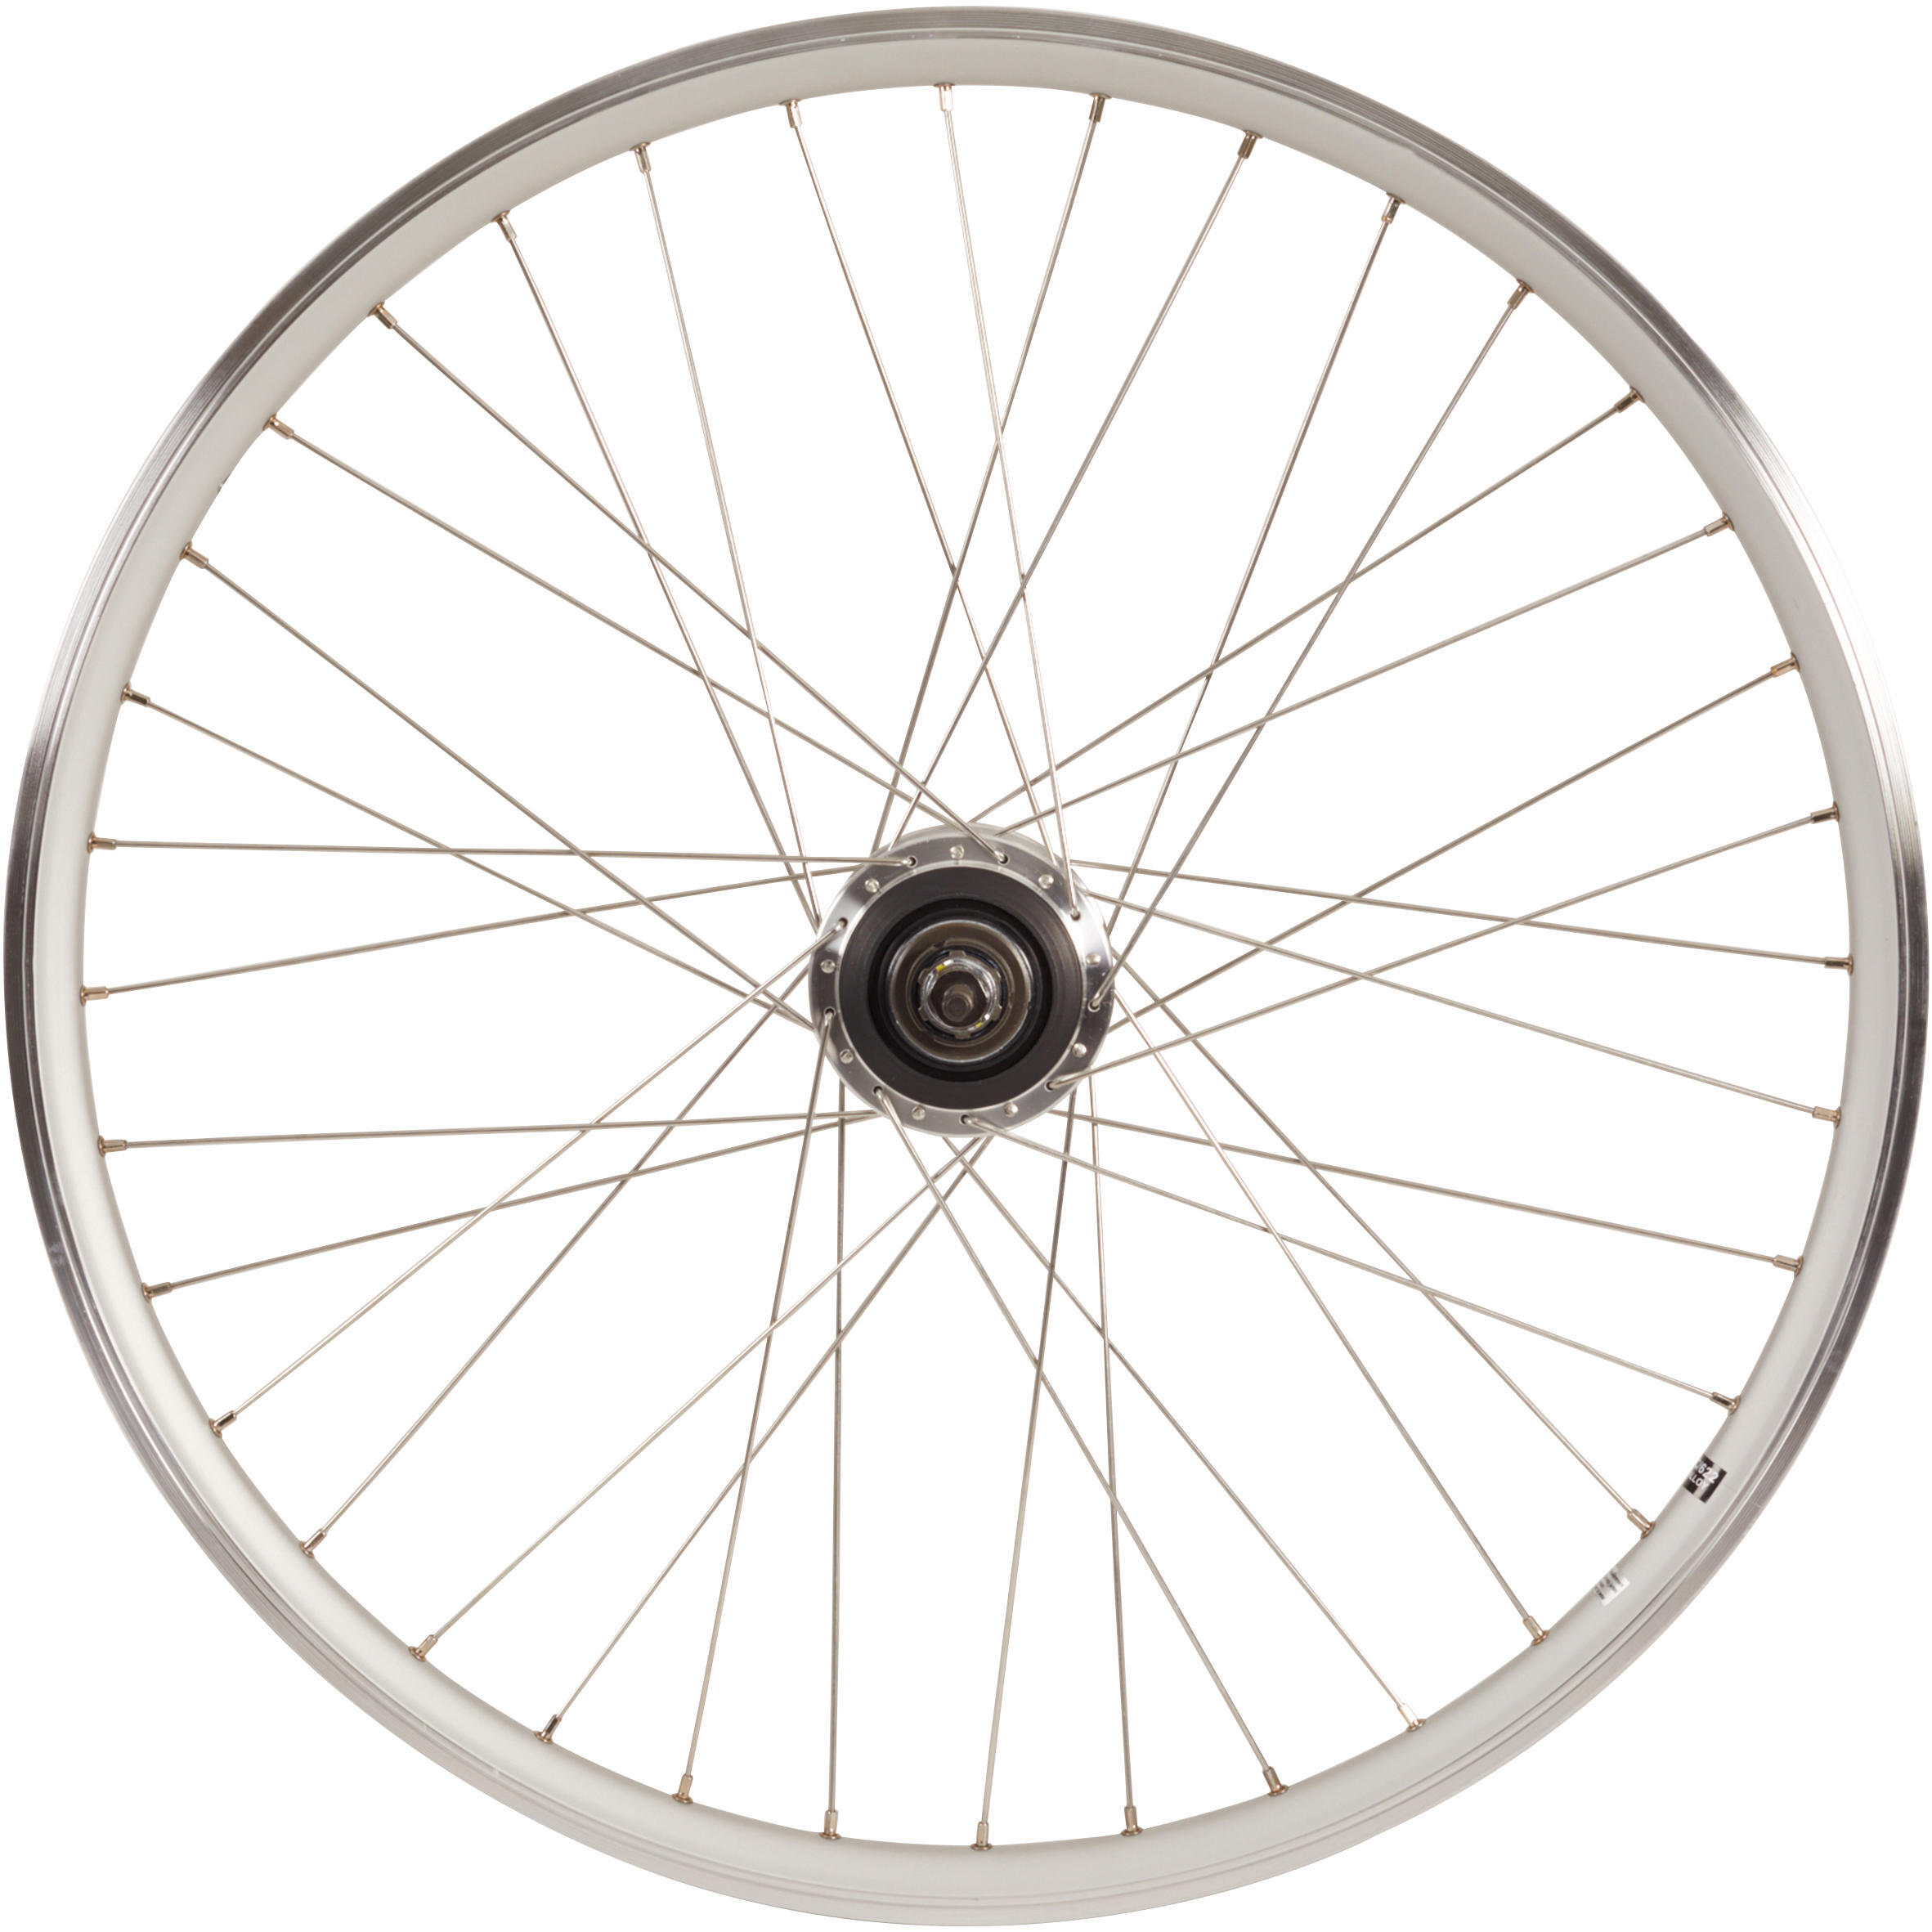 Заднее колесо крыльчатки 28-дюймовый обод для городского велосипеда с двойными стенками Nexus7 серебристый Elops 920, серебро чехол mypads e vano для dexp ixion xl150